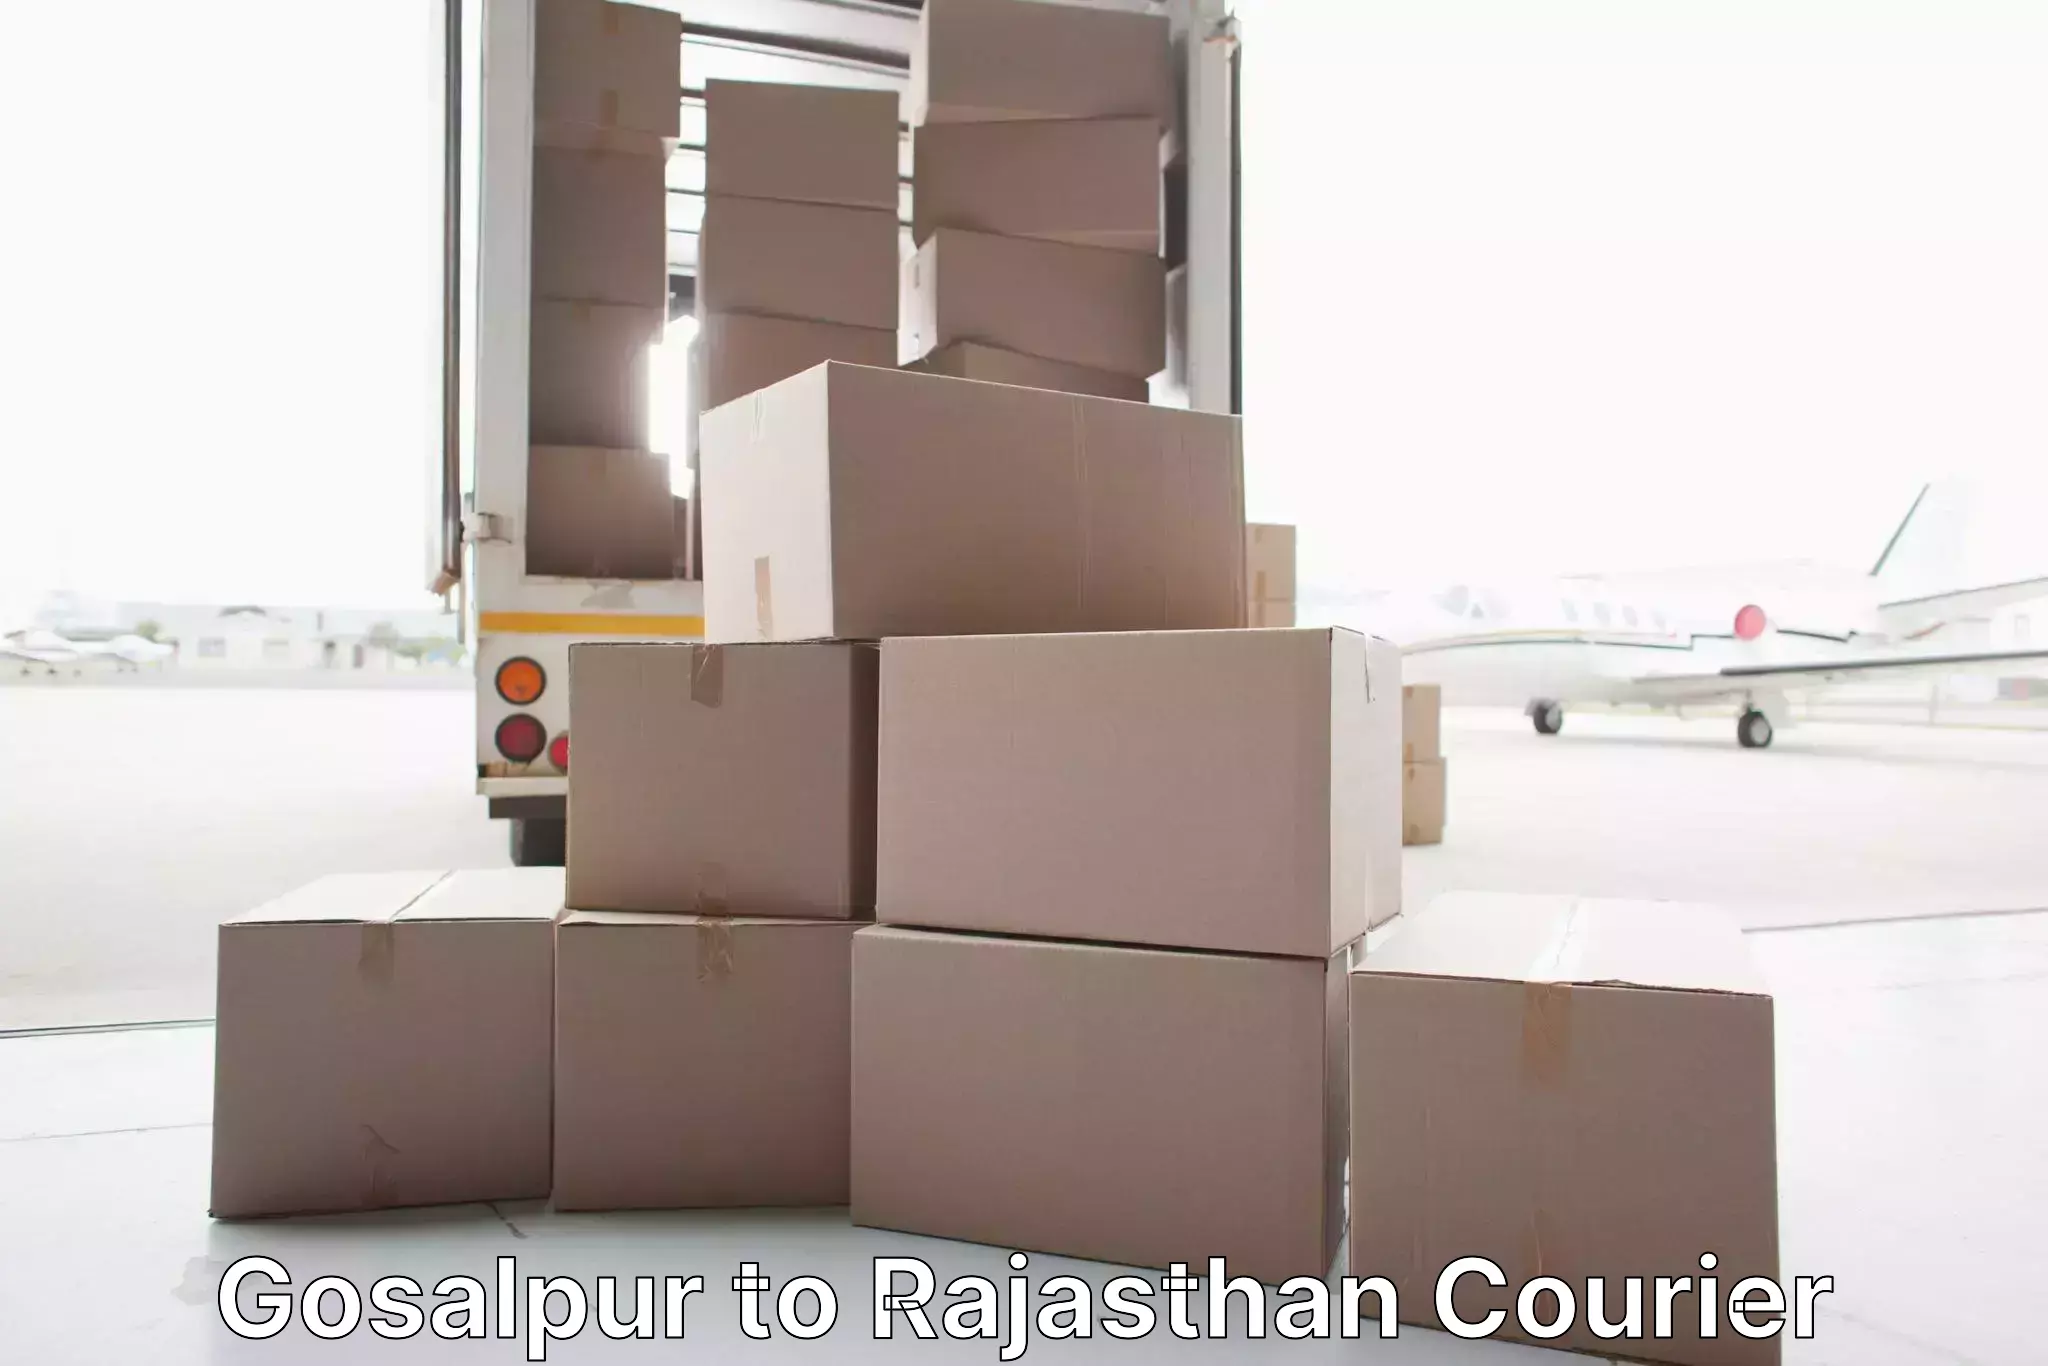 Furniture moving experts Gosalpur to Beawar